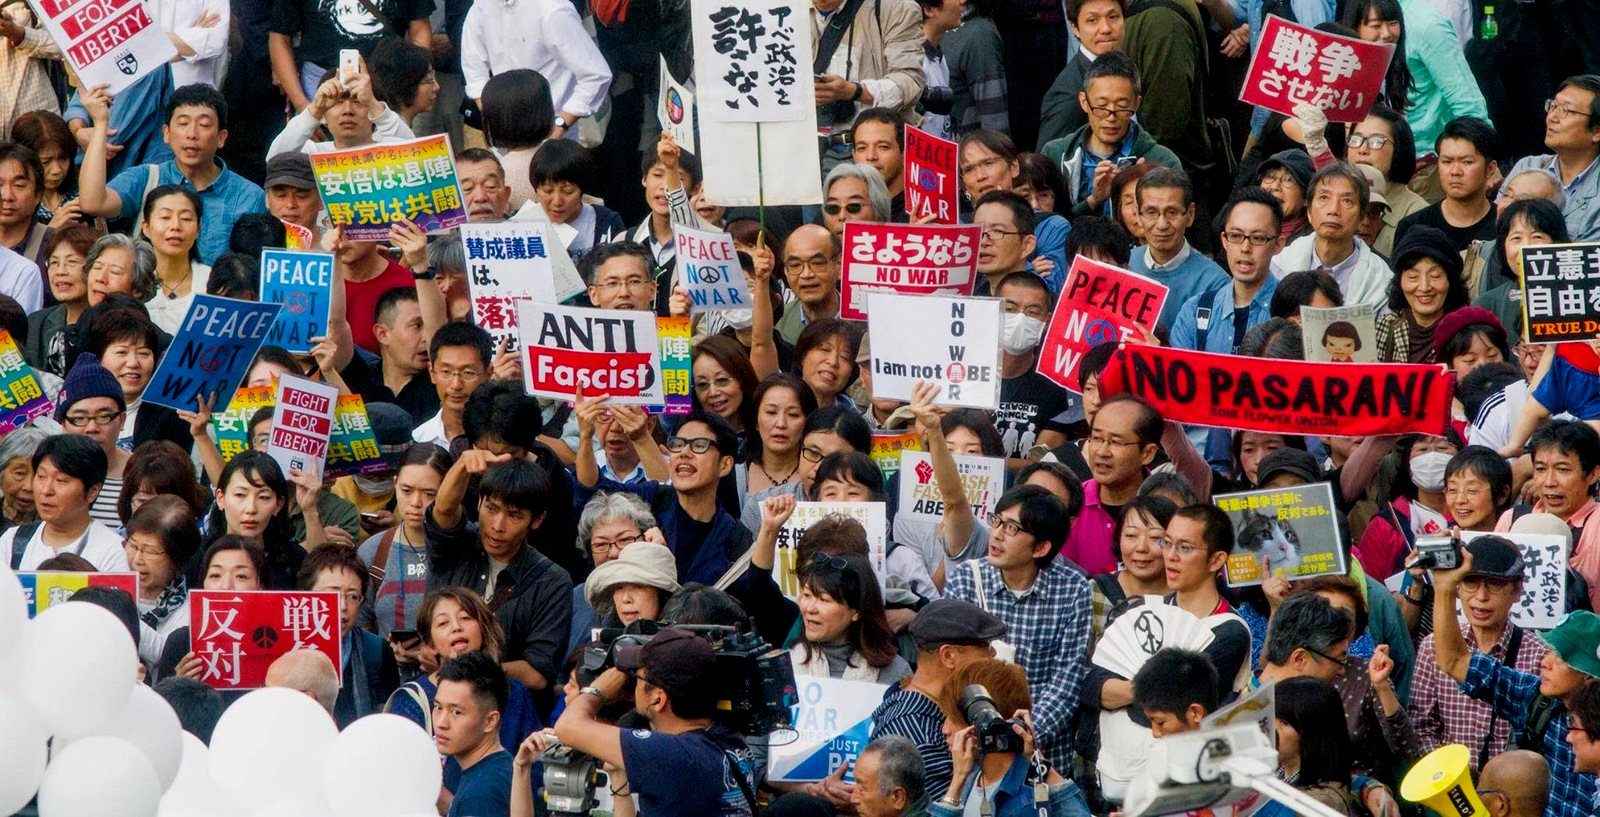 An anti-war protest in Toyko, Japan. (Photo: Akinori Gomi)